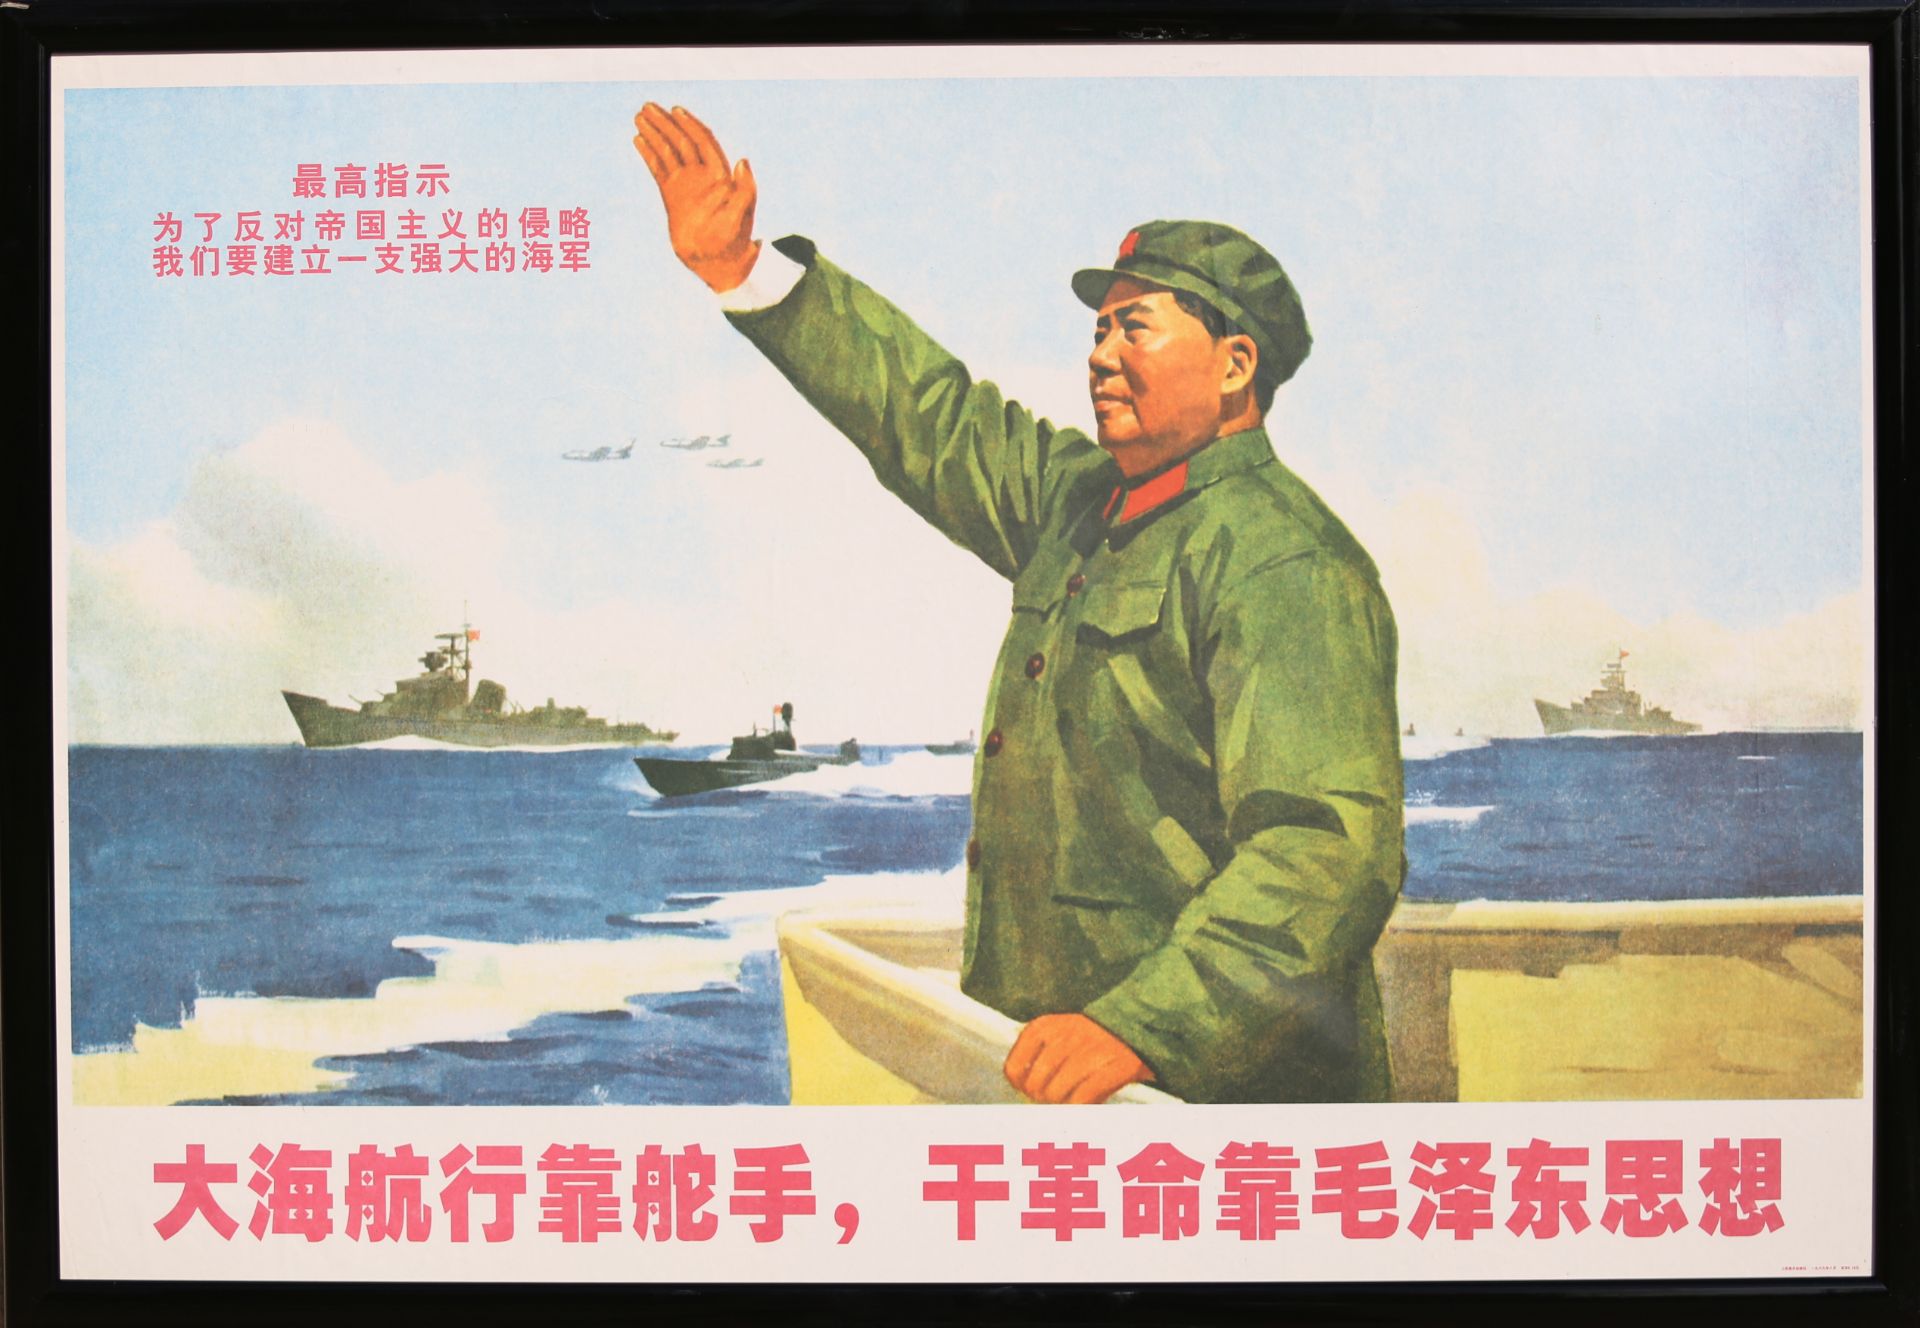 17 Affiches de propagande de la révolution culturelle chinoise Encadrée 75cm x 52cm - Bild 3 aus 17